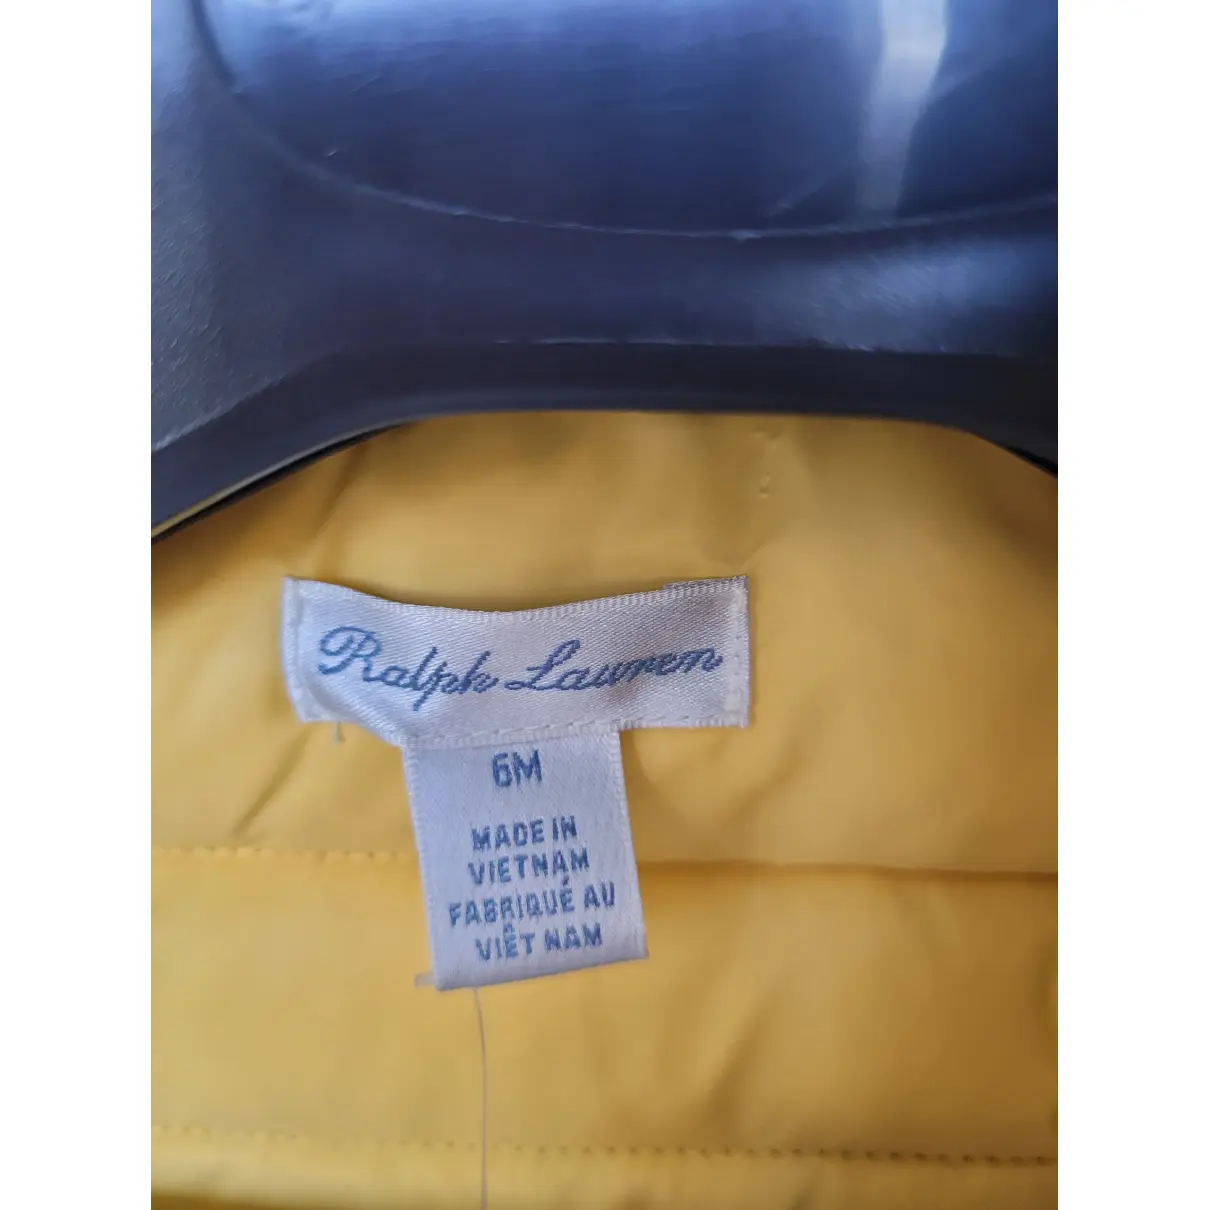 Jacket Ralph Lauren